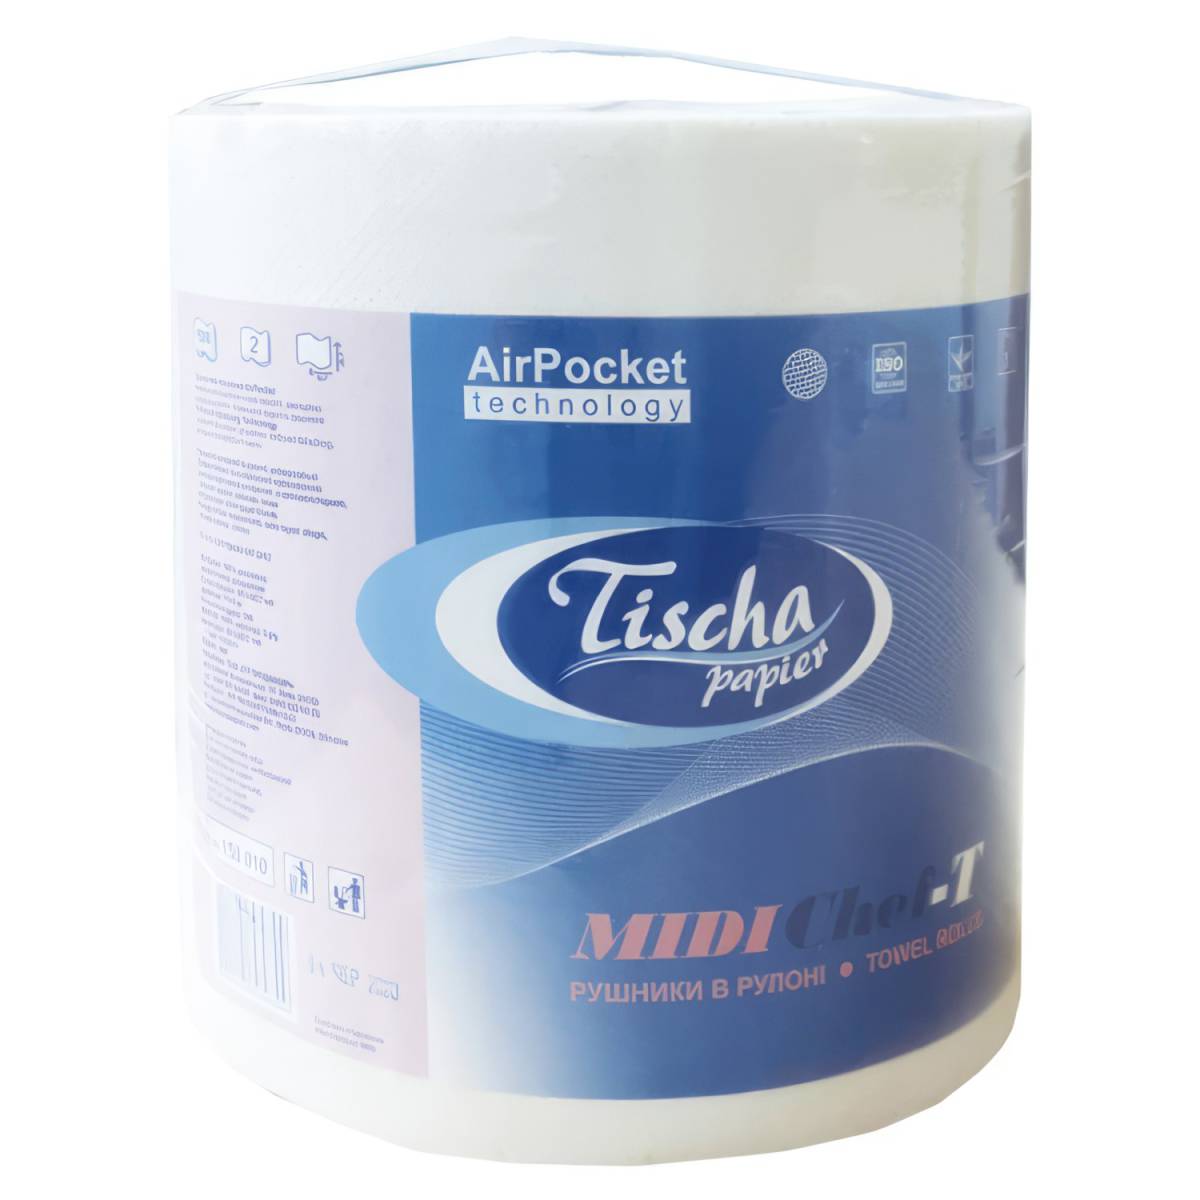 Полотенце в рулоне кухонное MidiChef-T (1 рулон 500отрывов) 150010 Tischa Papier